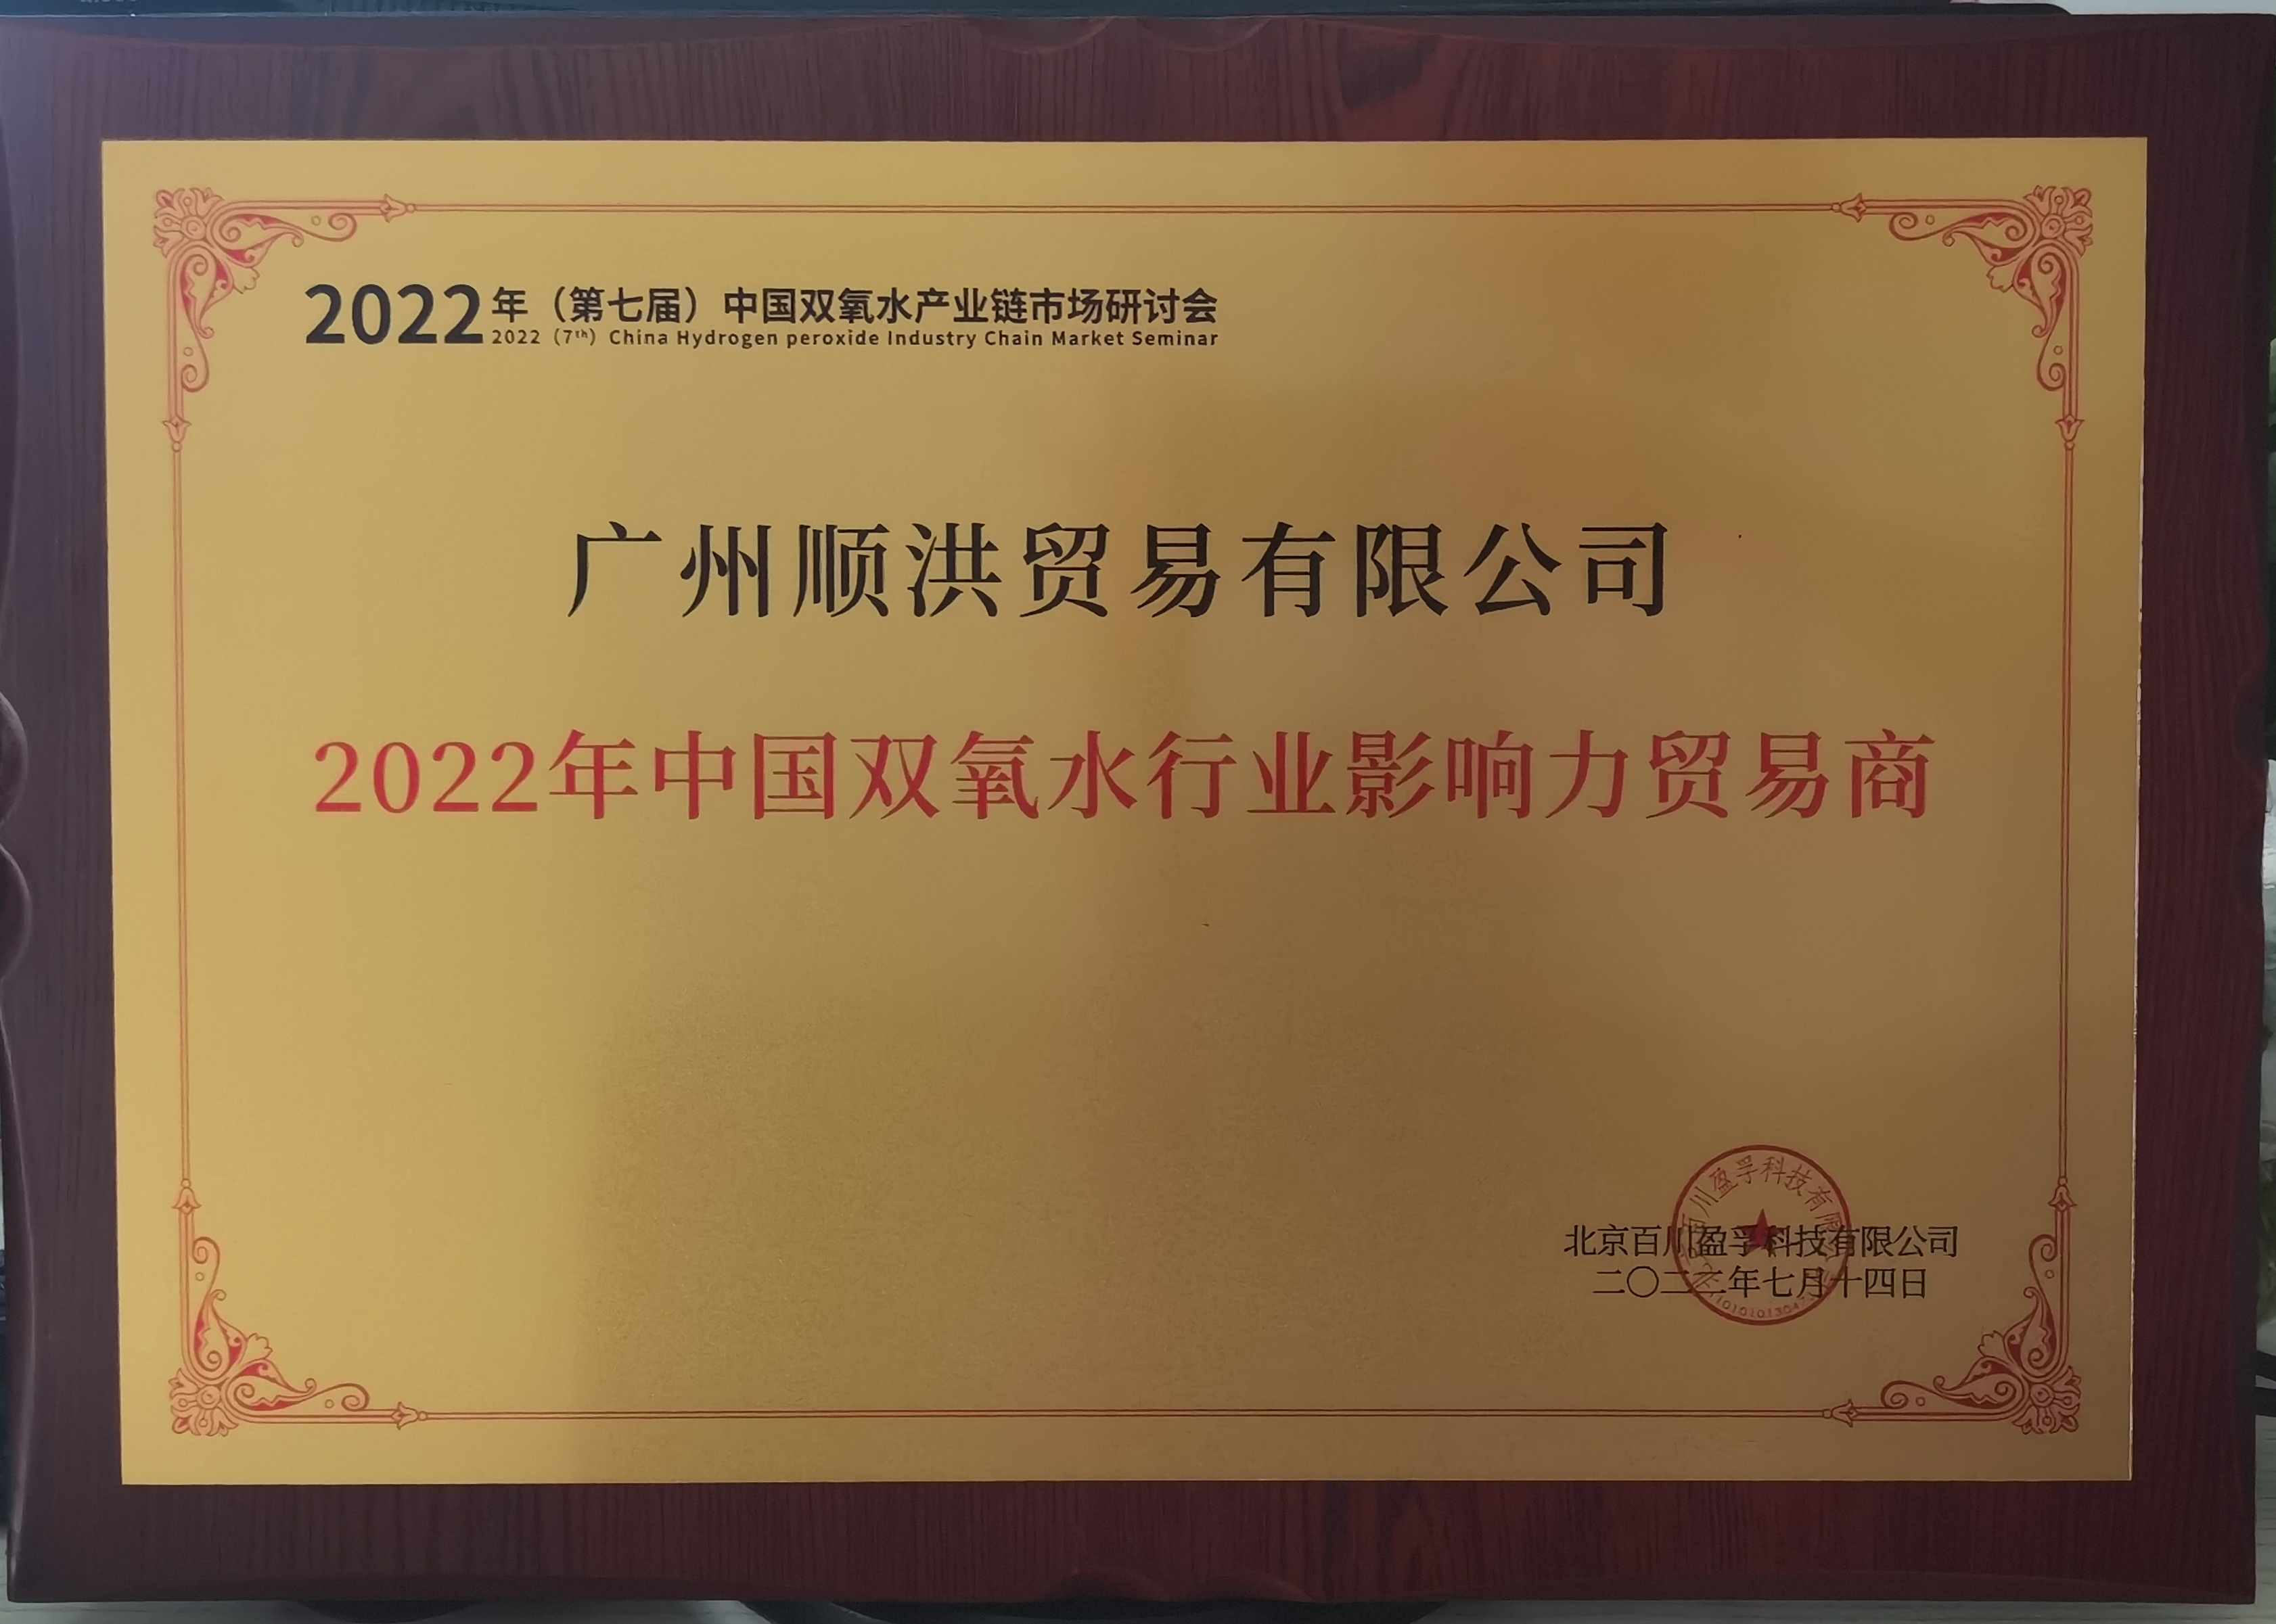 喜报!我司荣获“2022年中国双氧水行业影响力贸易商”荣誉称号